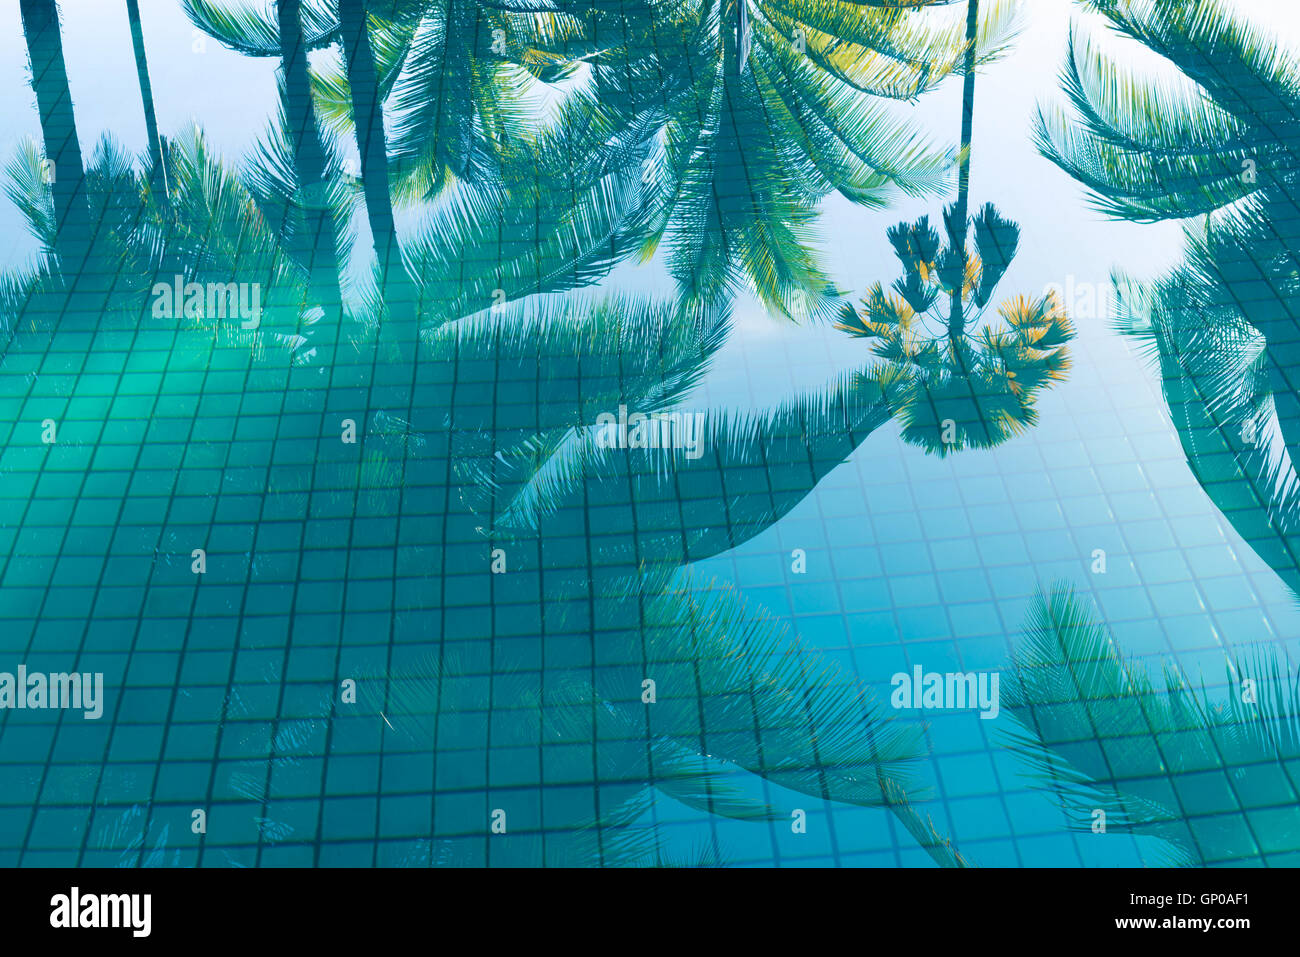 Reflexion von Kokospalmen und Zucker Plam Baum in Türkis-Schwimmbad Stockfoto